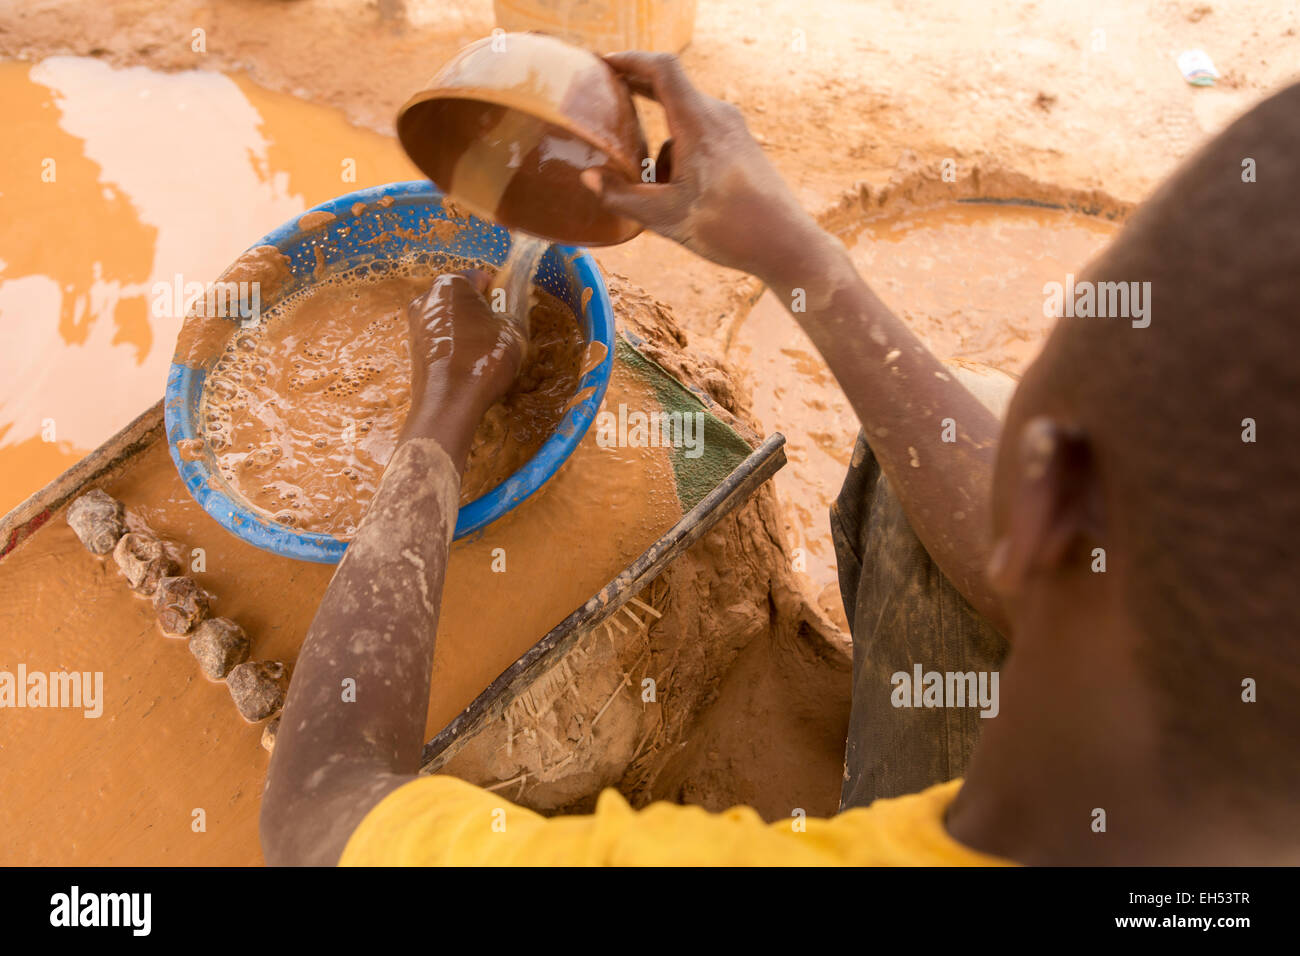 KOMOBANGAU, NIGER, 15 mai 2012 15 mai 2012 : un mineur se lave le sol de minerai pour extraire des fragments d'or stiny Banque D'Images